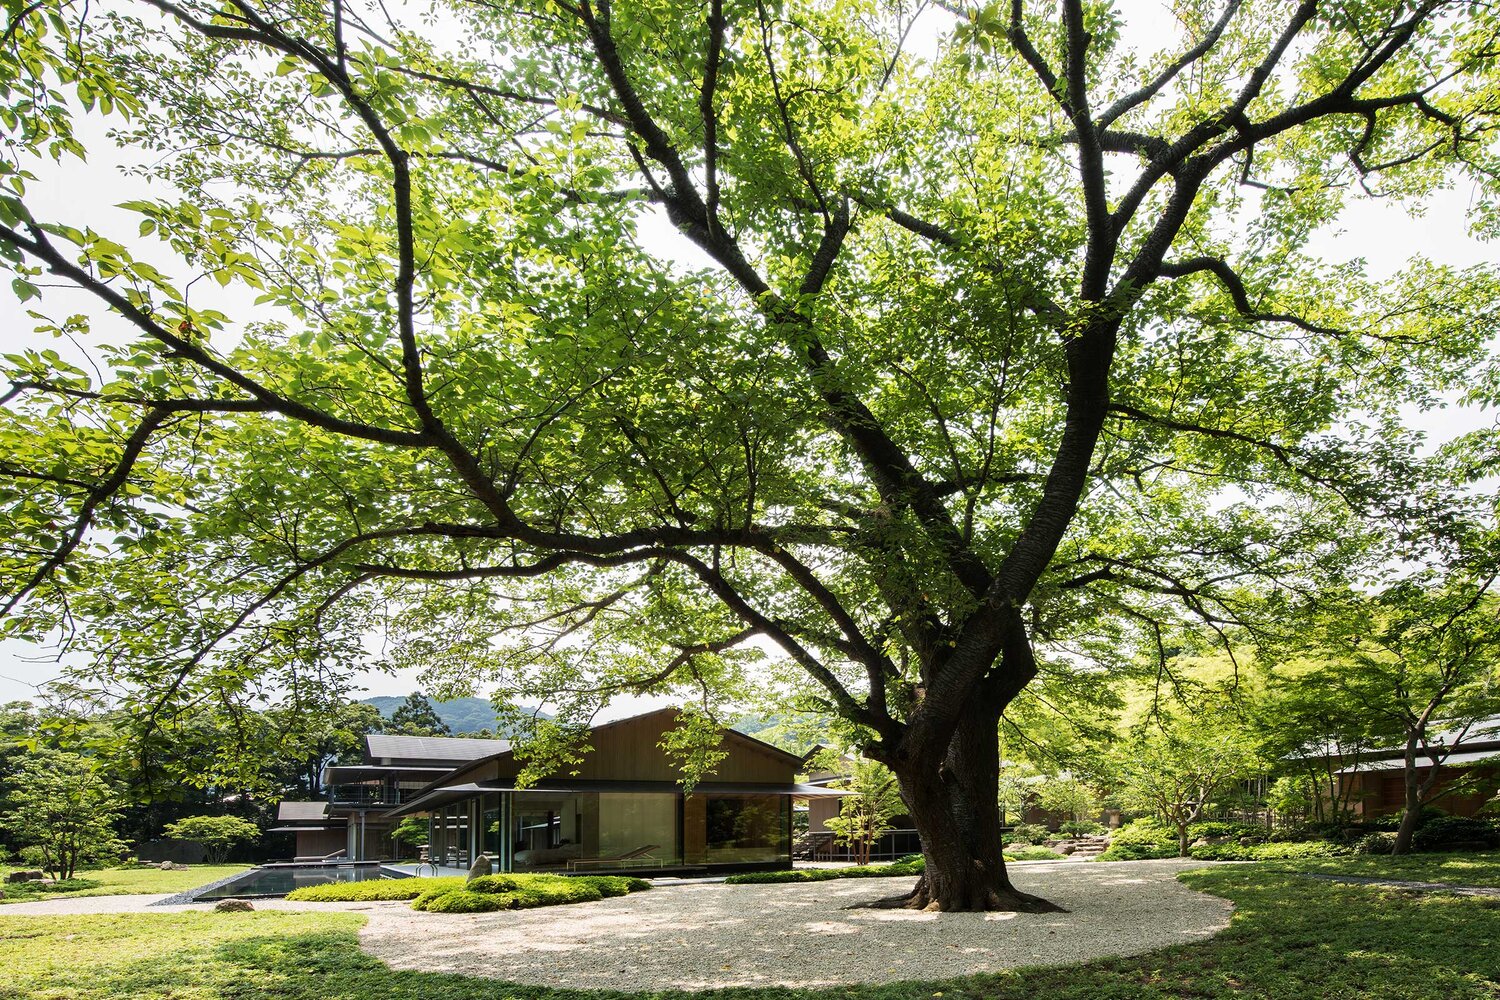 Water Cherry Villa mang đậm phong cách Nhật Bản vừa đương đại vừa truyền thống - 1